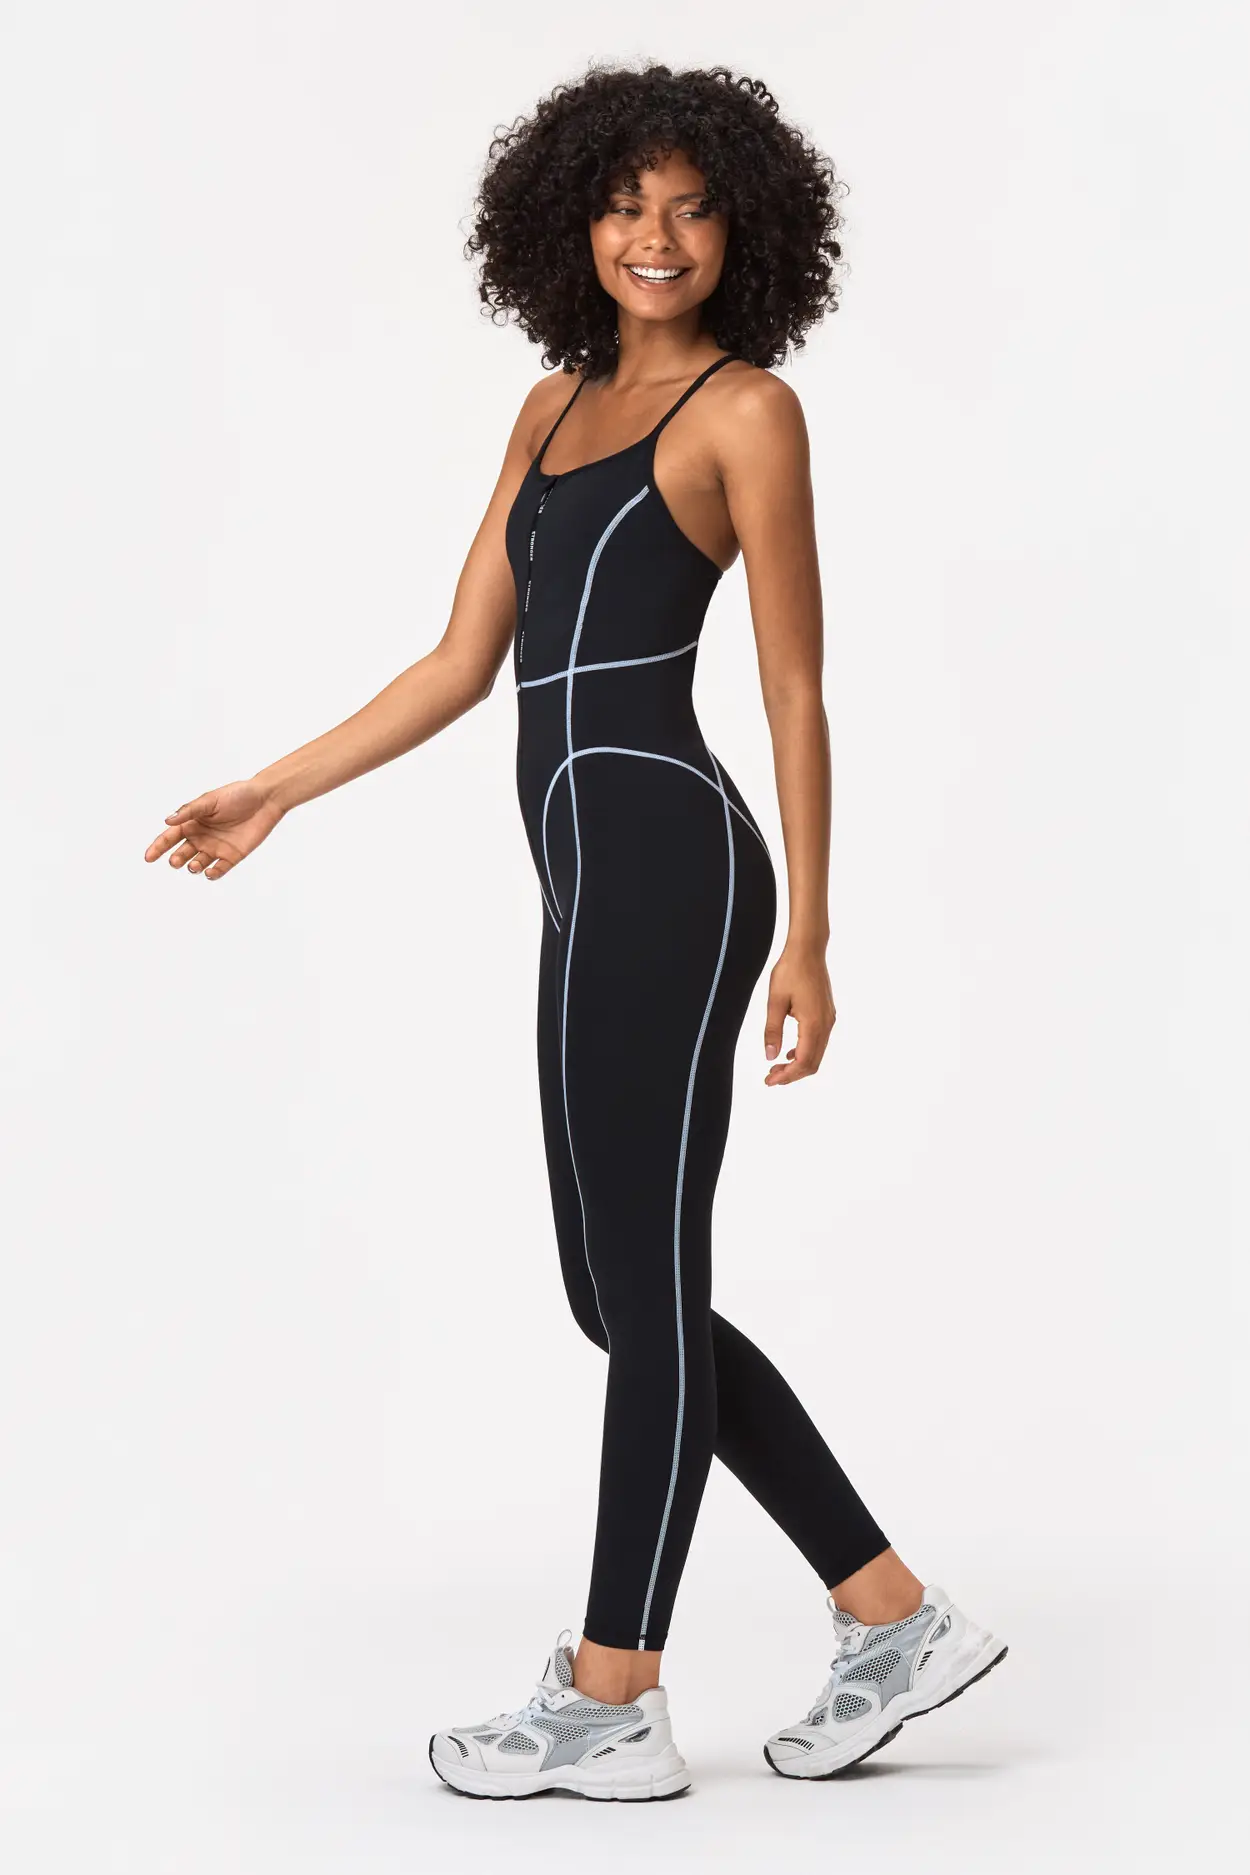 Black Sway Jumpsuit, Buy Online